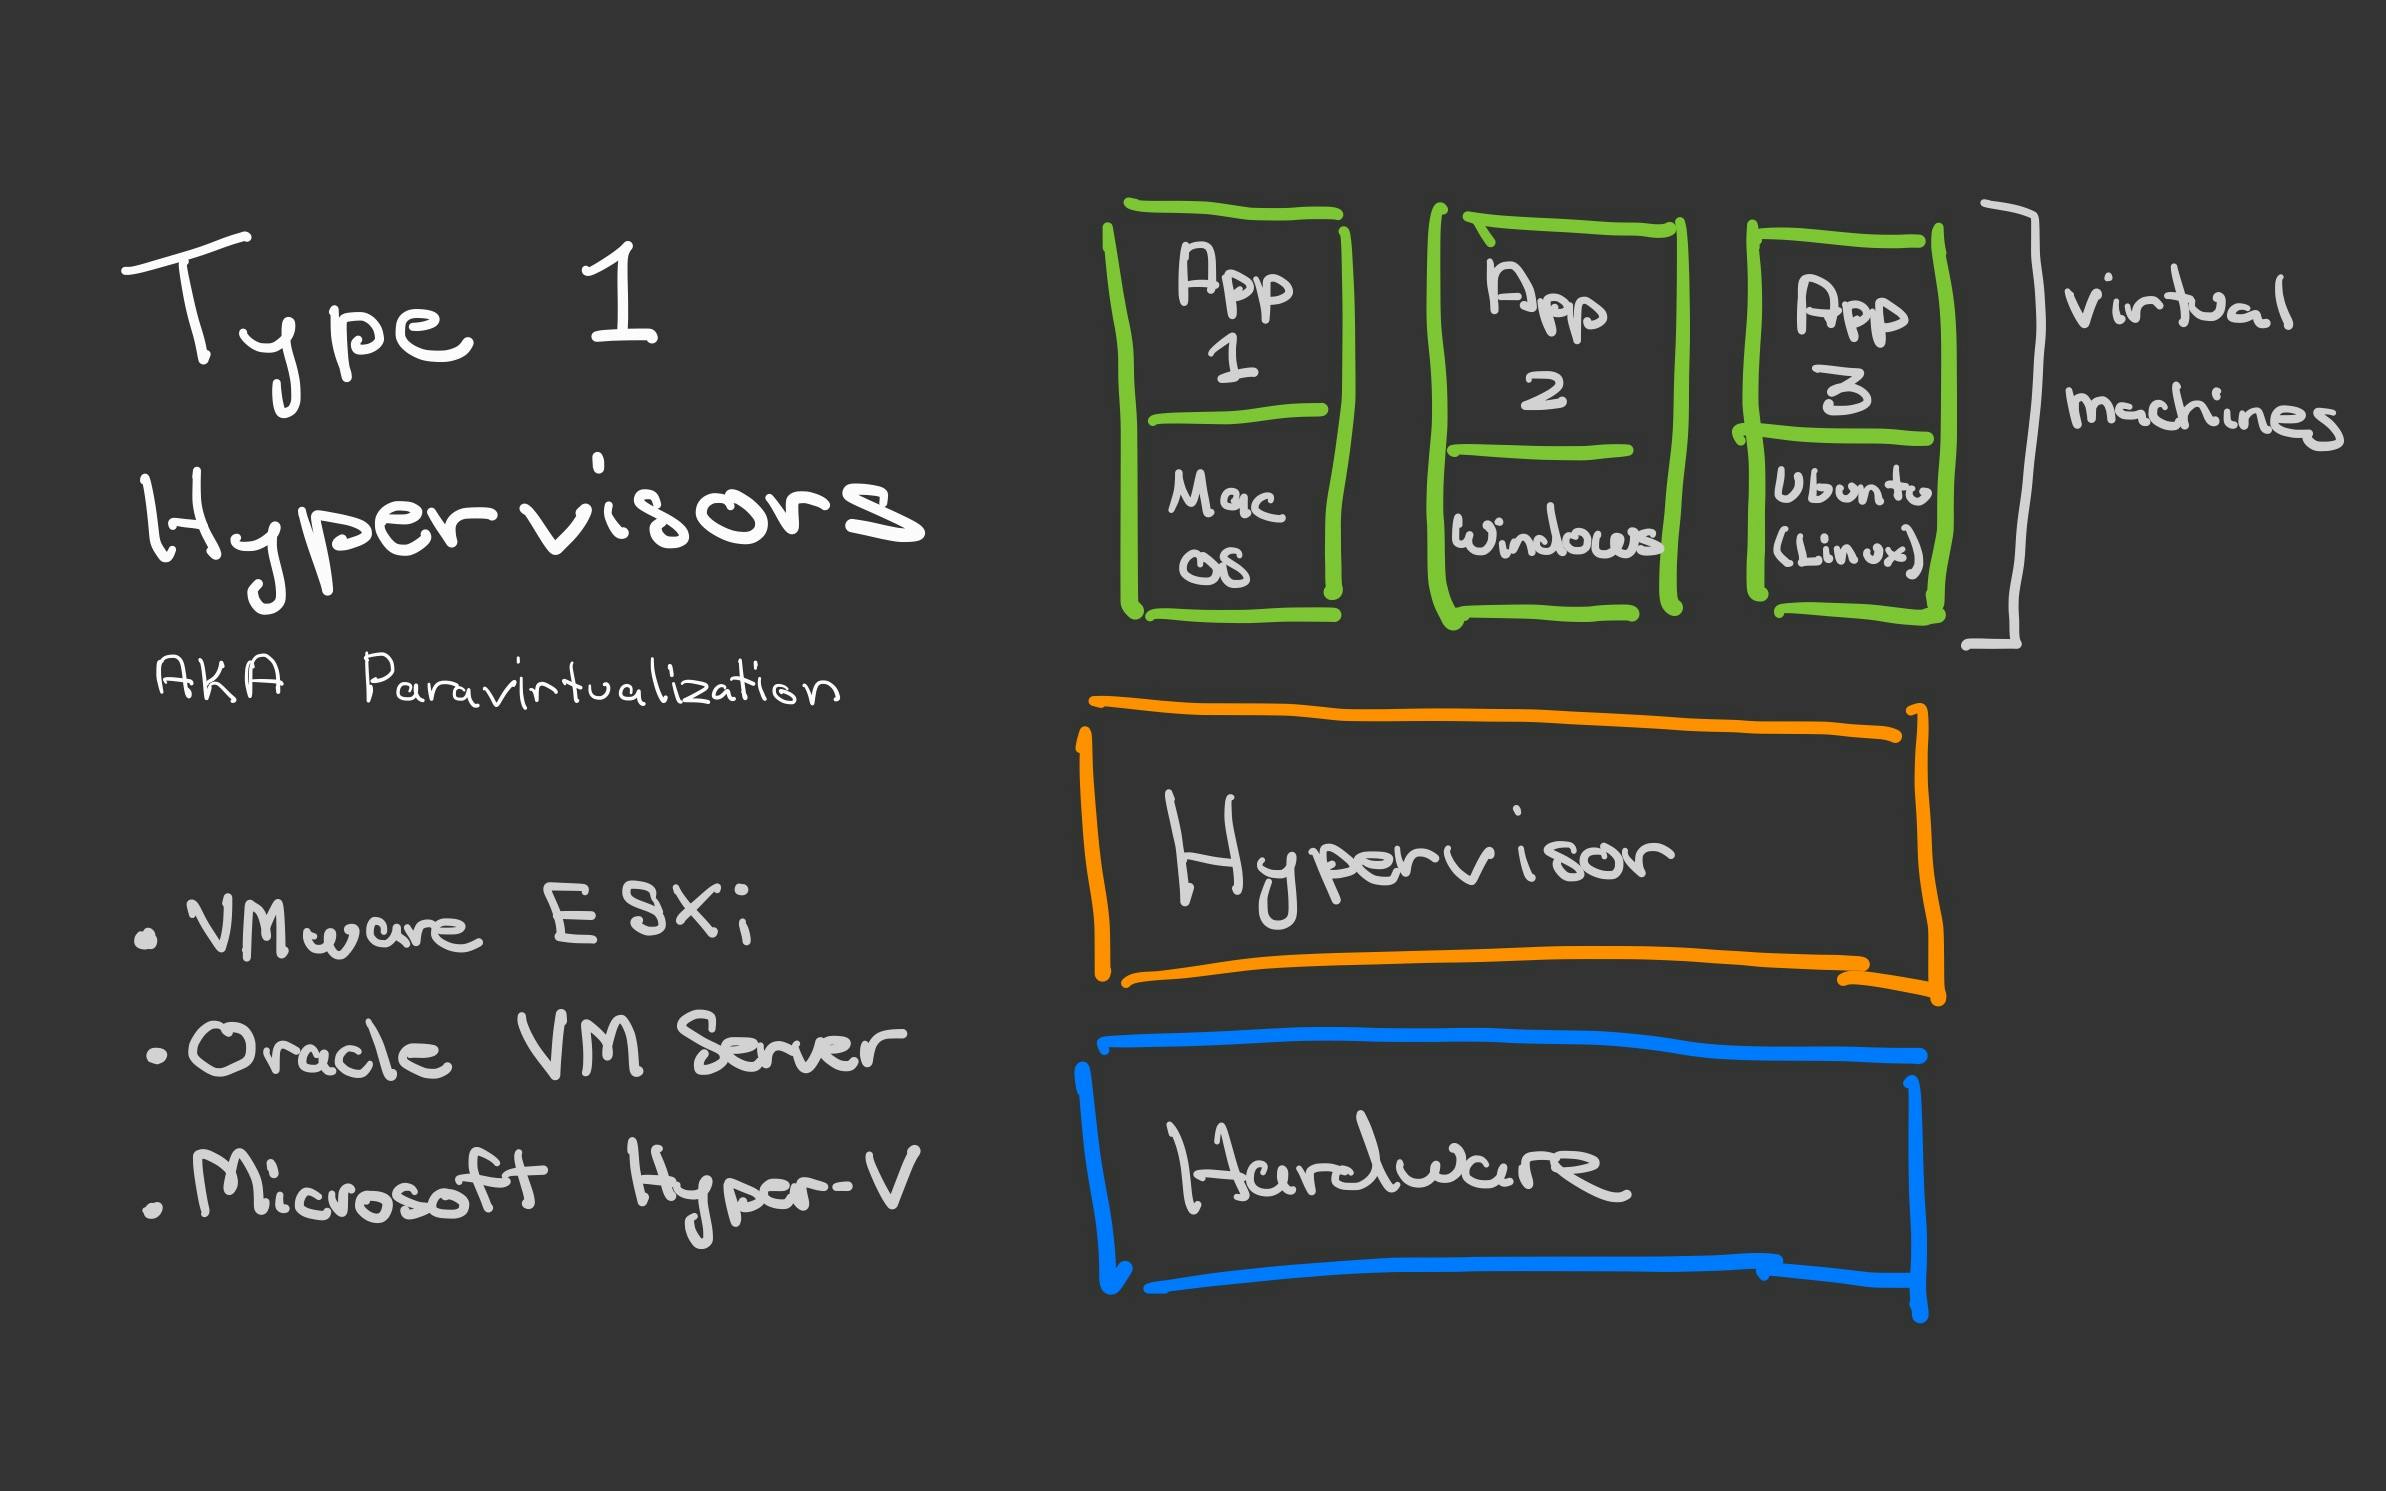 Type 1 Hypervisors